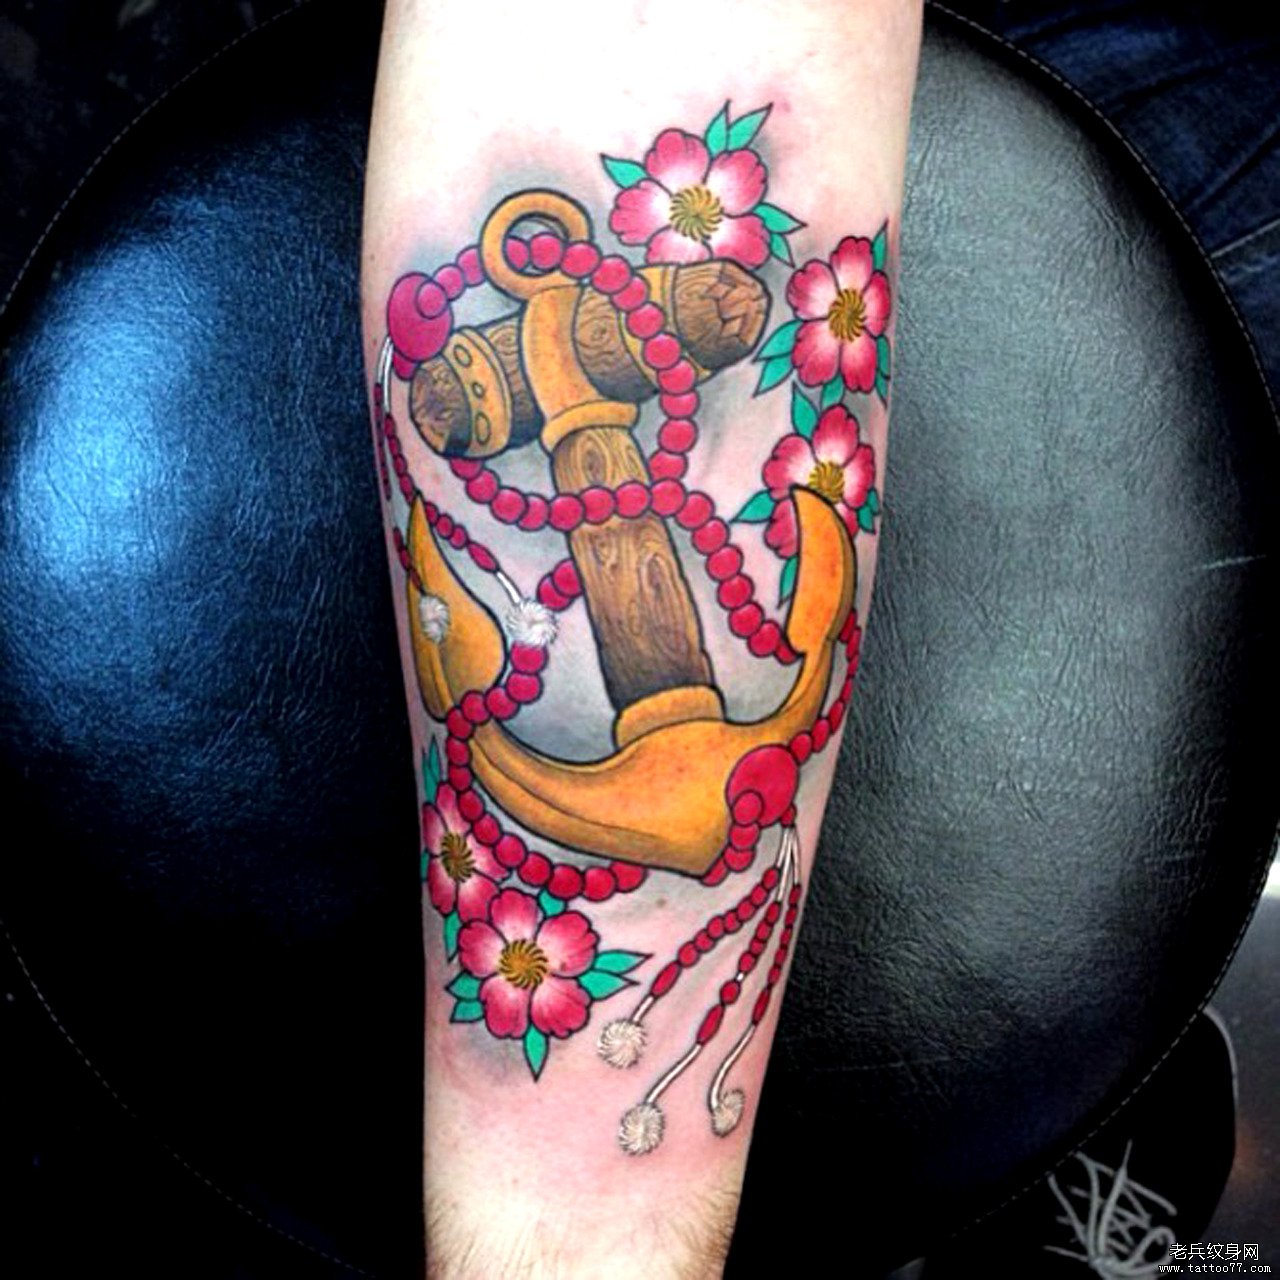 手臂上一款漂亮彩色船锚纹身图案